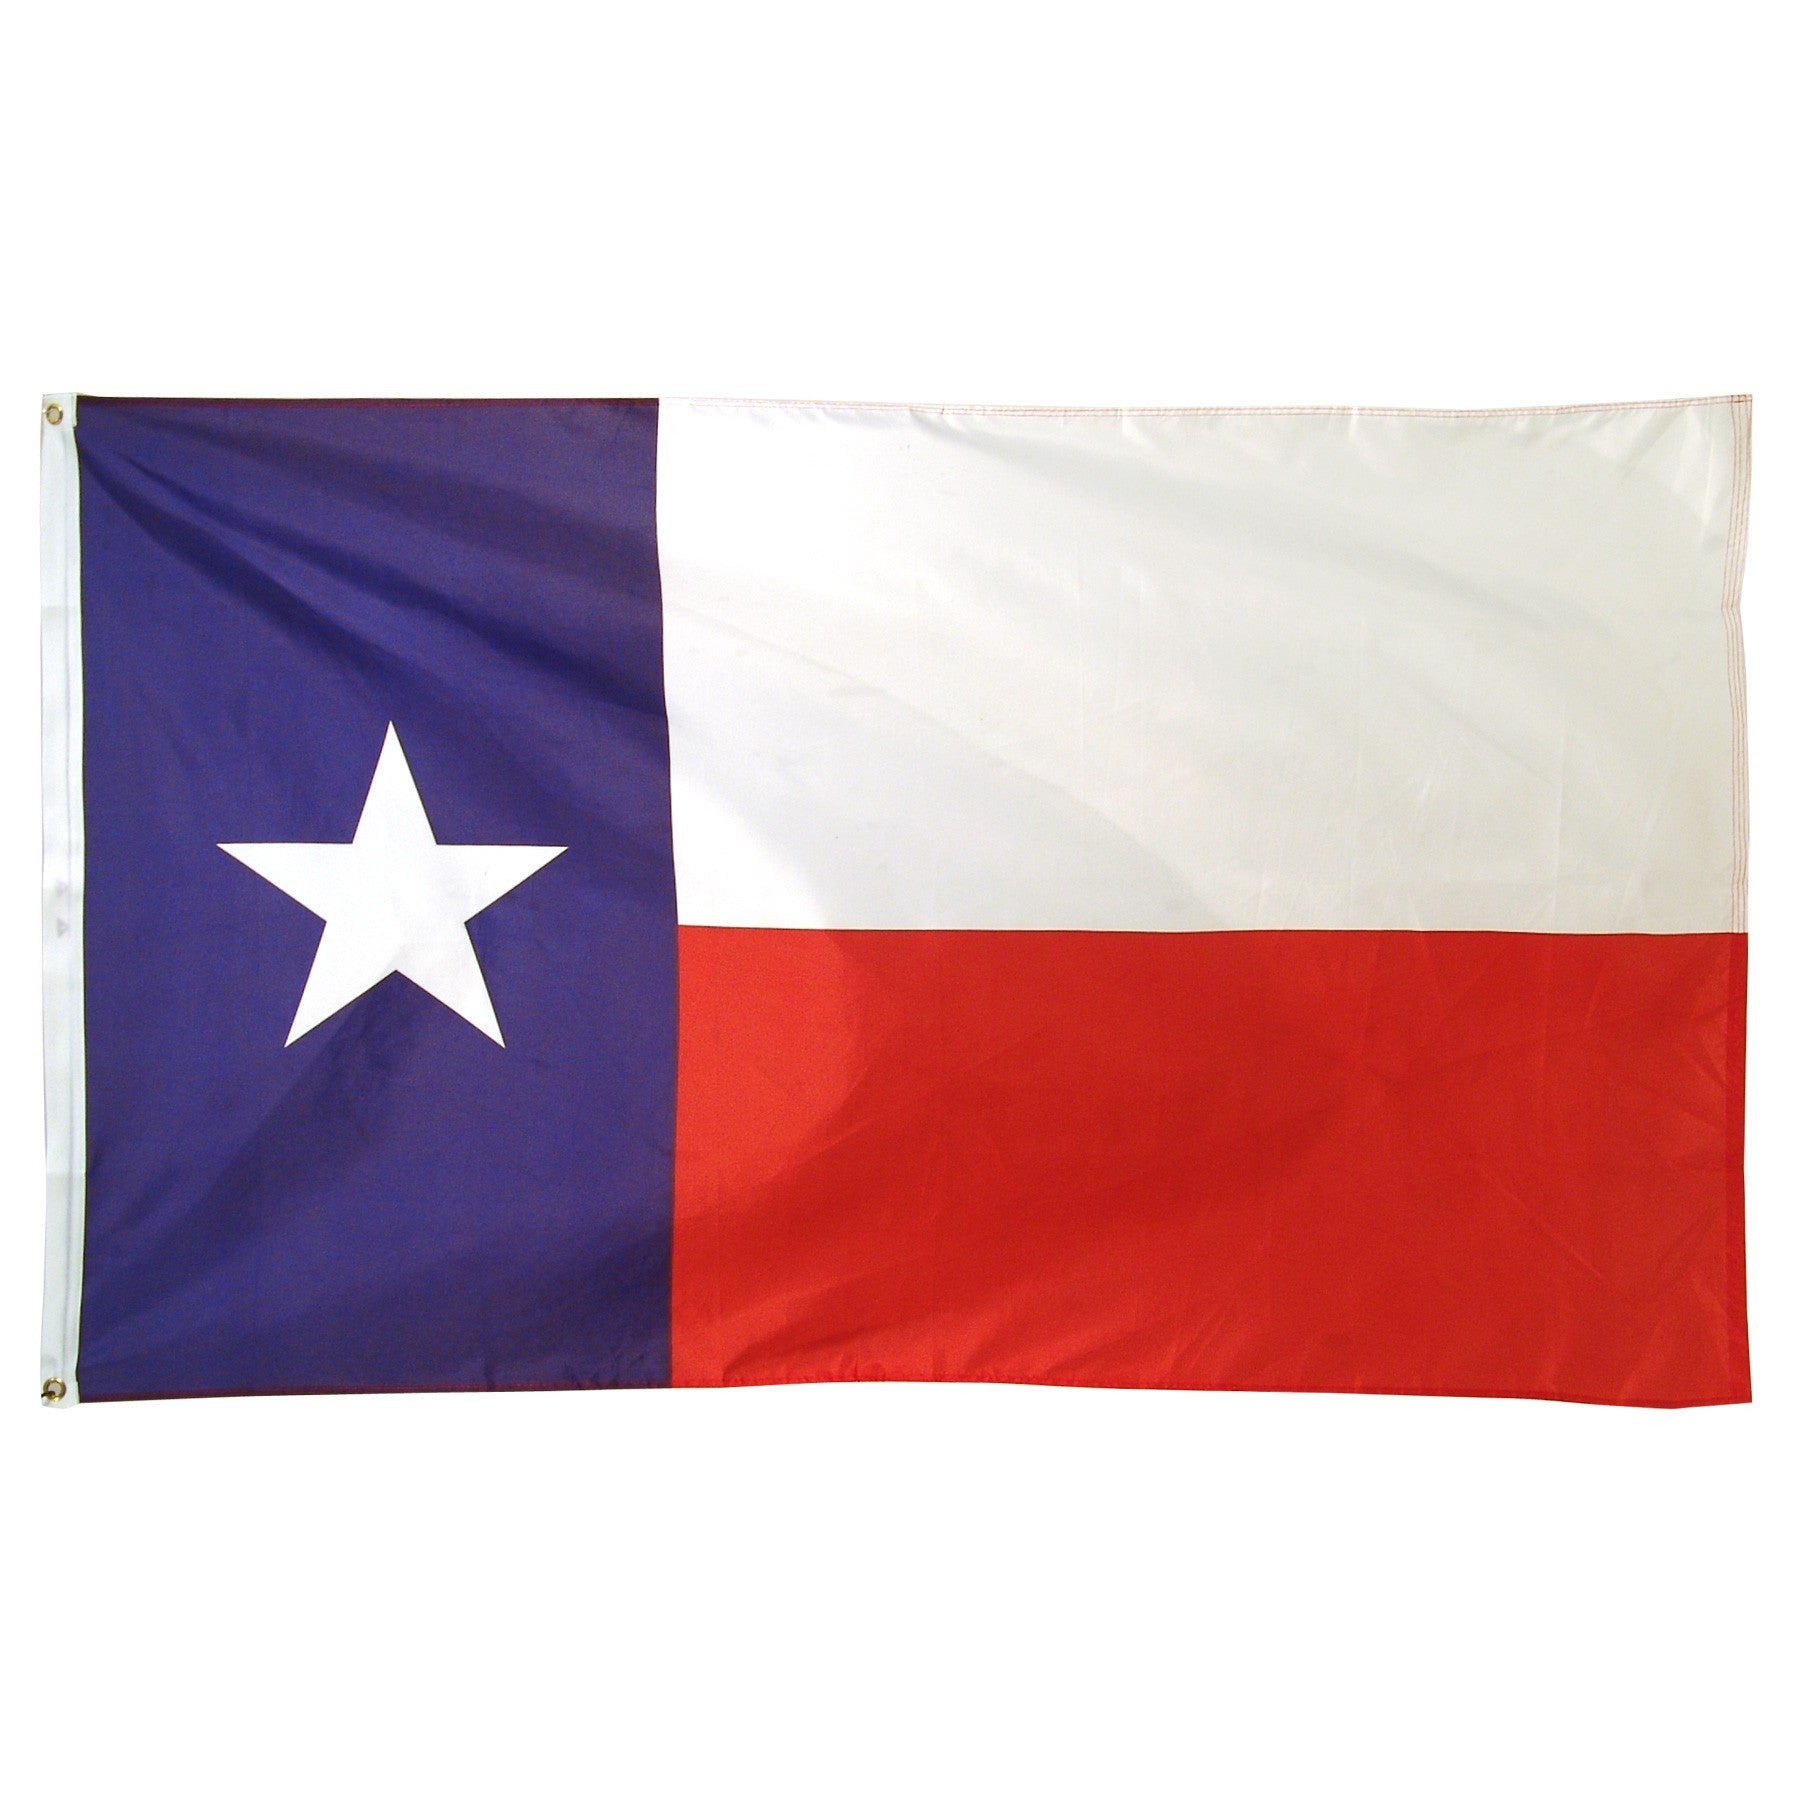 Buy flag of Texas USA high quality outdoor Nylon